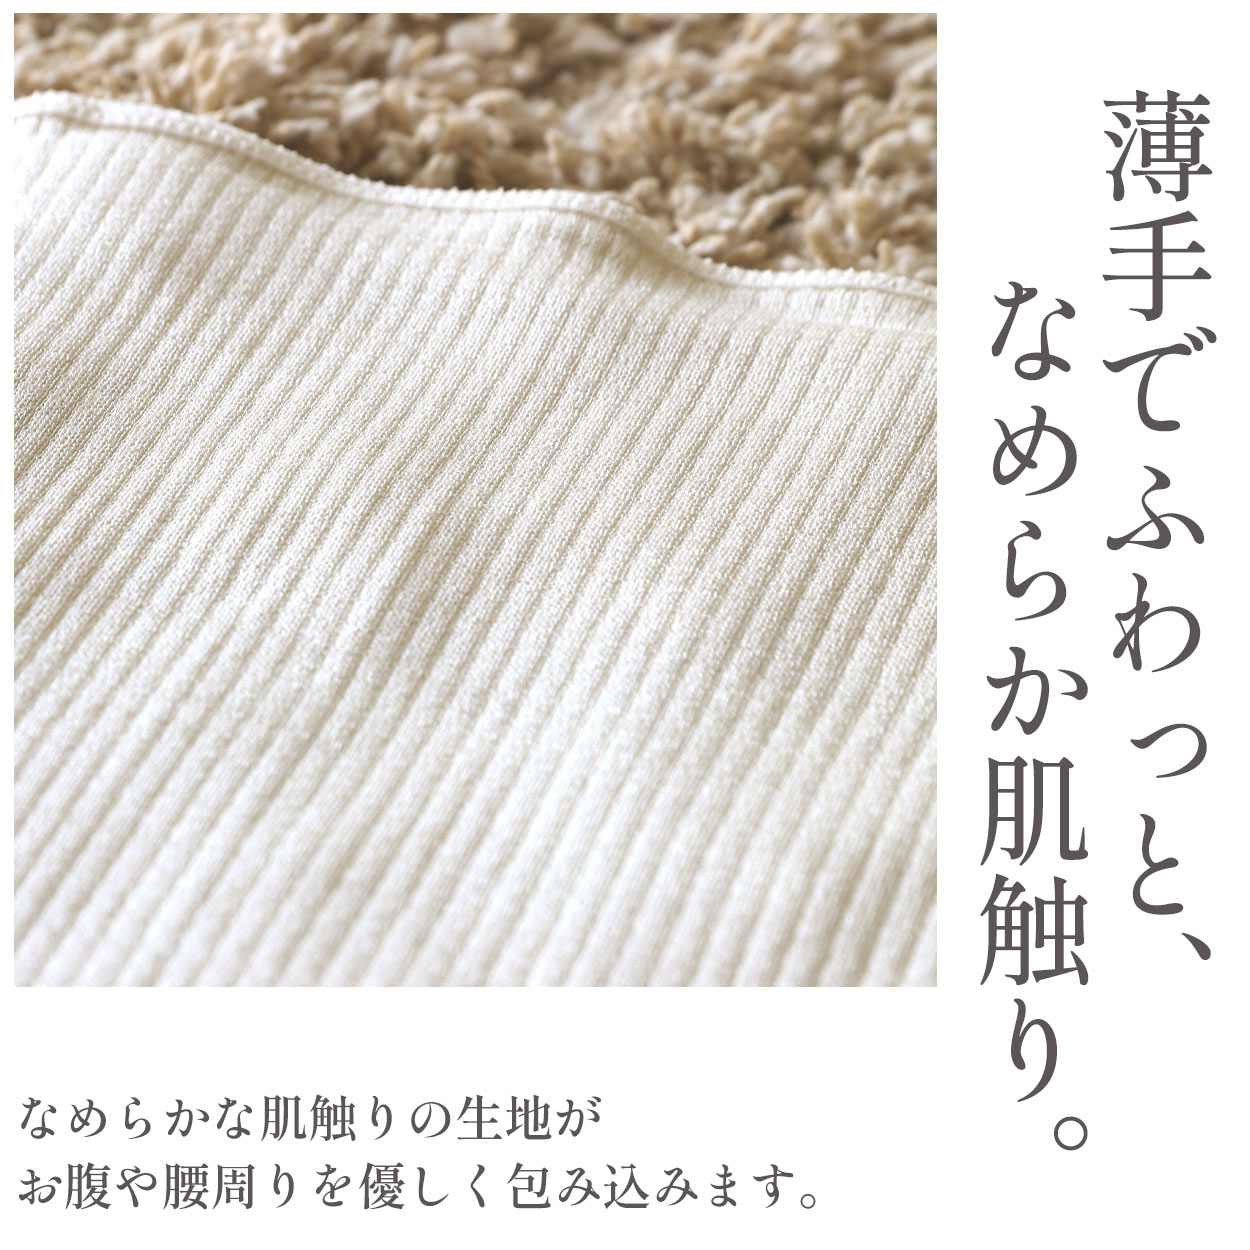 レディース 腹巻き シルク 防寒 美容 セルフケア 絹 吸湿 速乾 保温 日本製 国産 白 茶色 ホワイト ブラウン ギフト プレゼント W58-92cm 美肌 はらまき